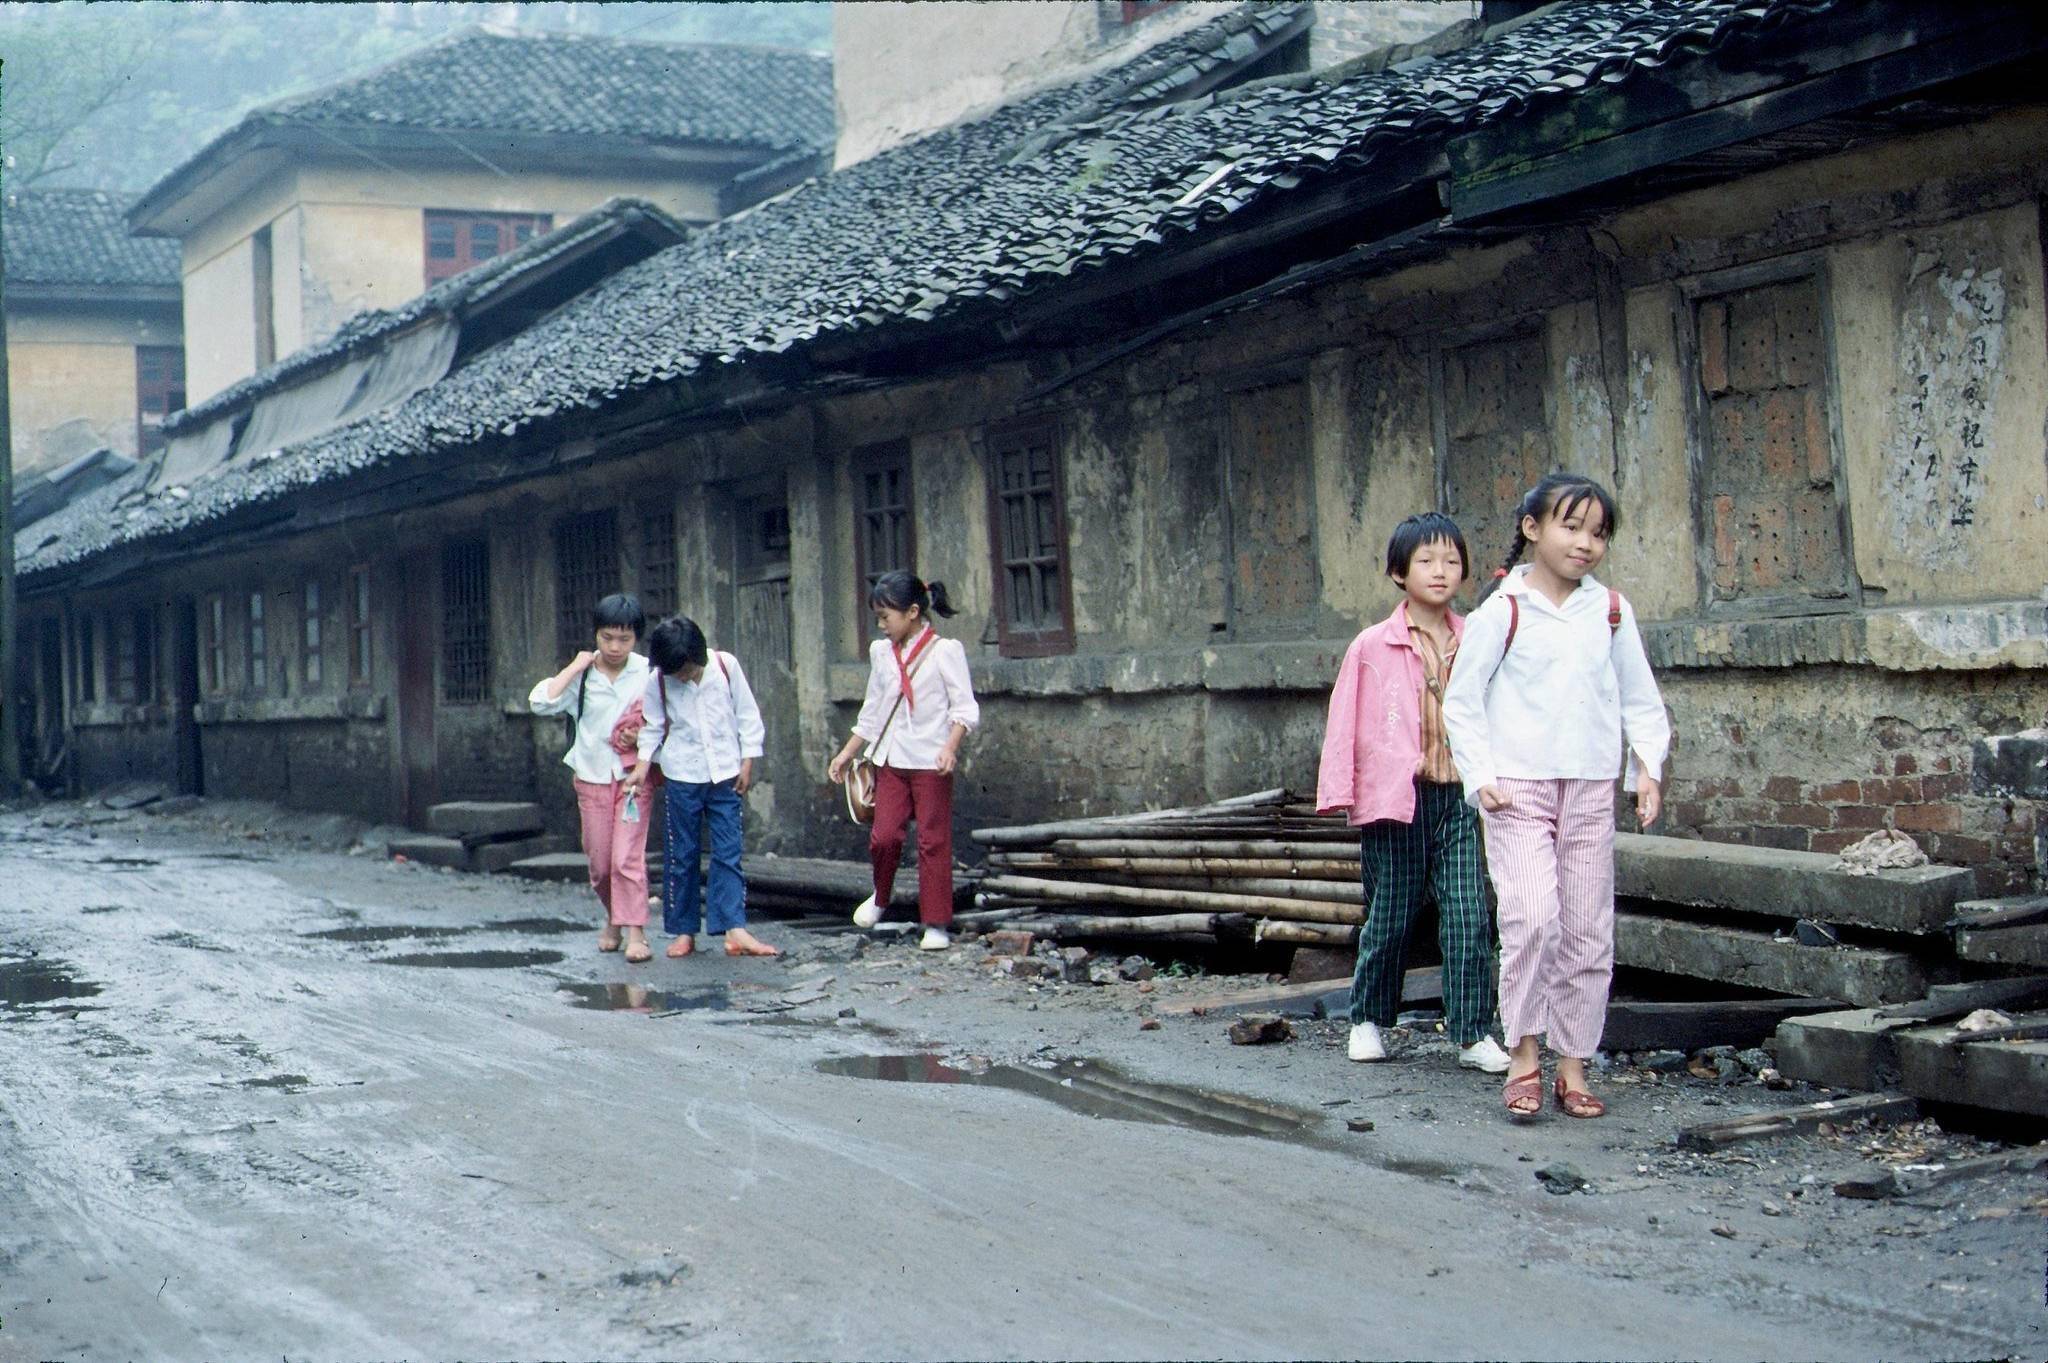 拍摄,在一处位于大山的国营工厂内,五个可爱的小女孩,应该是放学之后